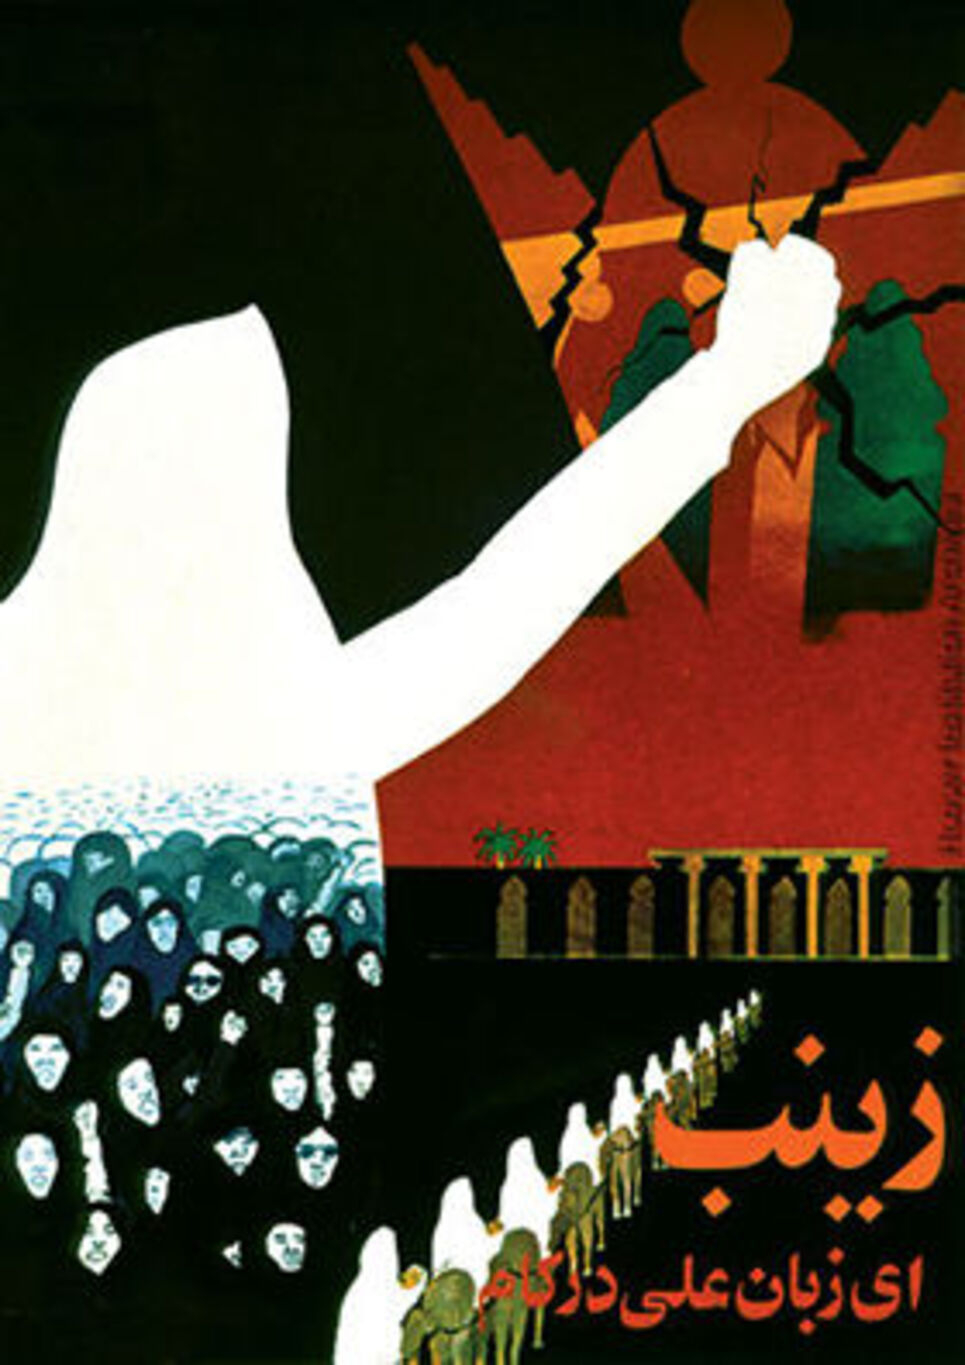 complex art illustration of a hijabi woman raising her fist